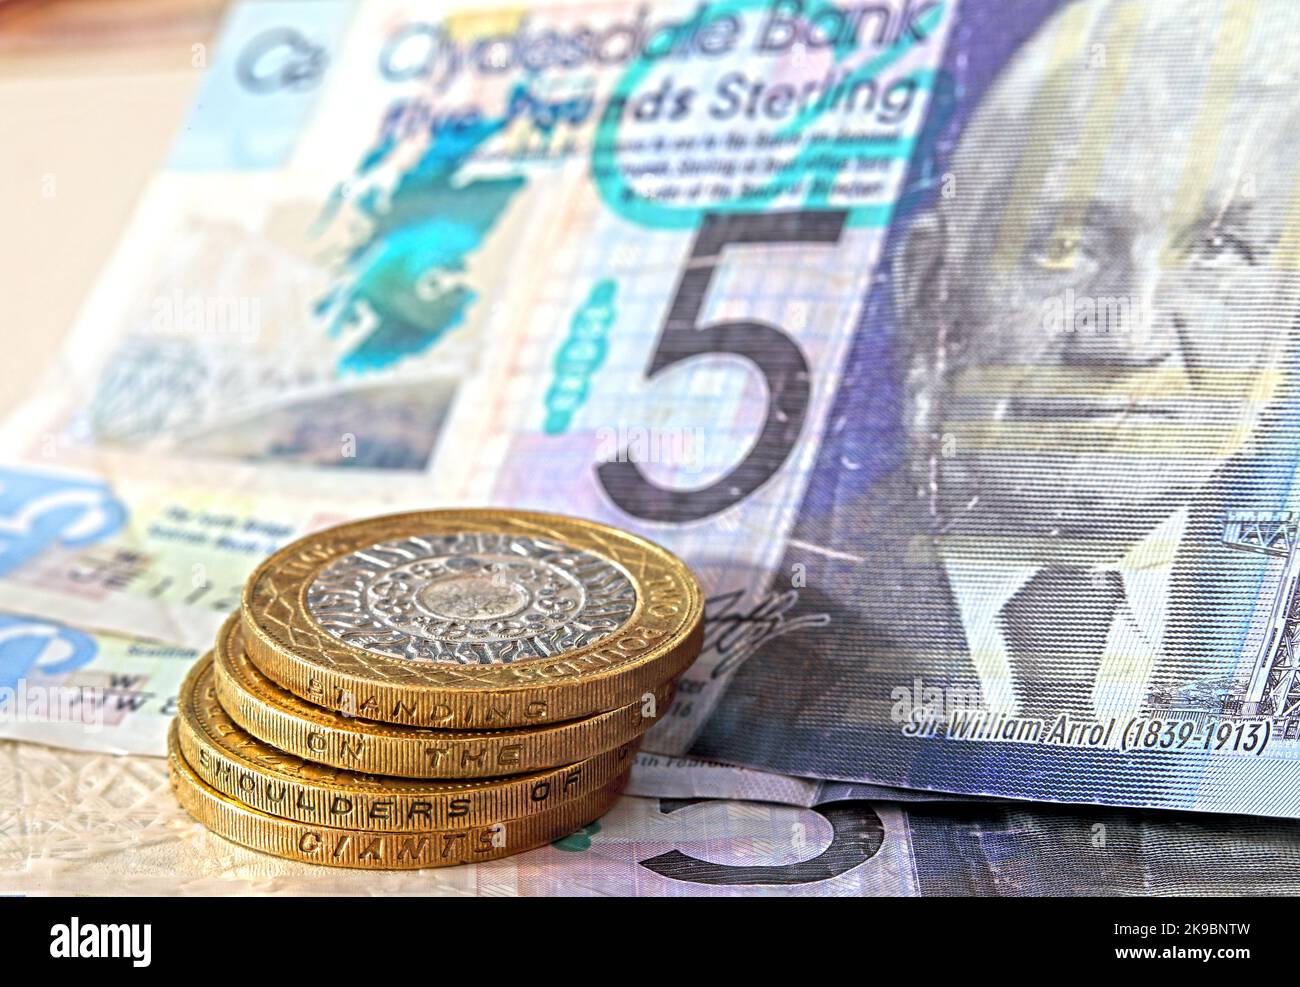 Schottische Sterling-Banknoten, zwei Teichmünzen, eine zukünftige temporäre Währung nach einer möglichen erfolgreichen SNP-Unabhängigkeitsabstimmung Stockfoto